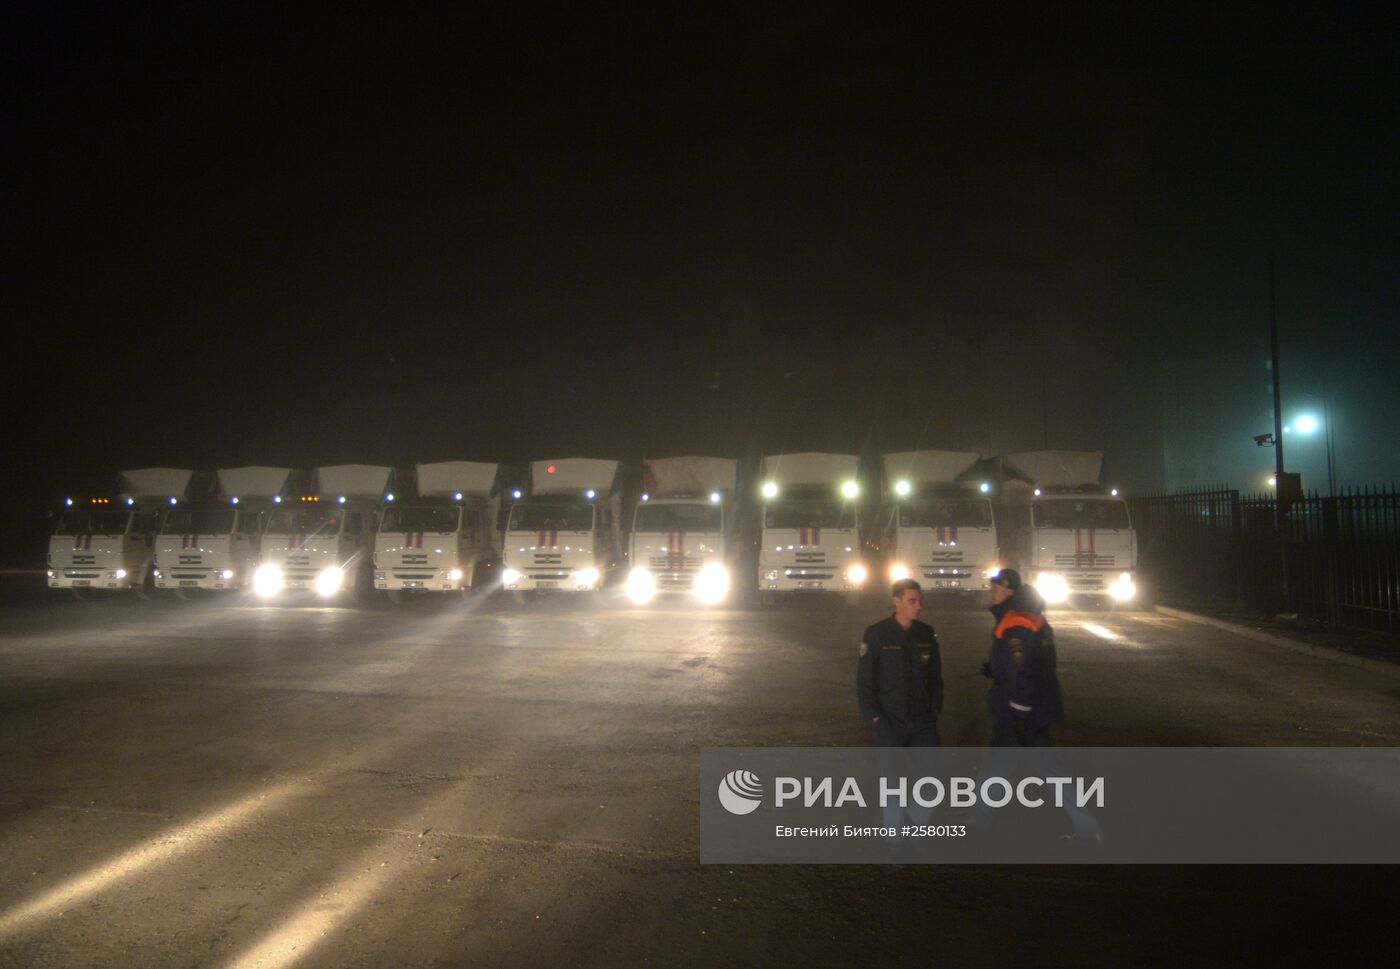 Шестнадцатый гуманитарный конвой для жителей юго-востока Украины прибыл на КПП "Донецк"